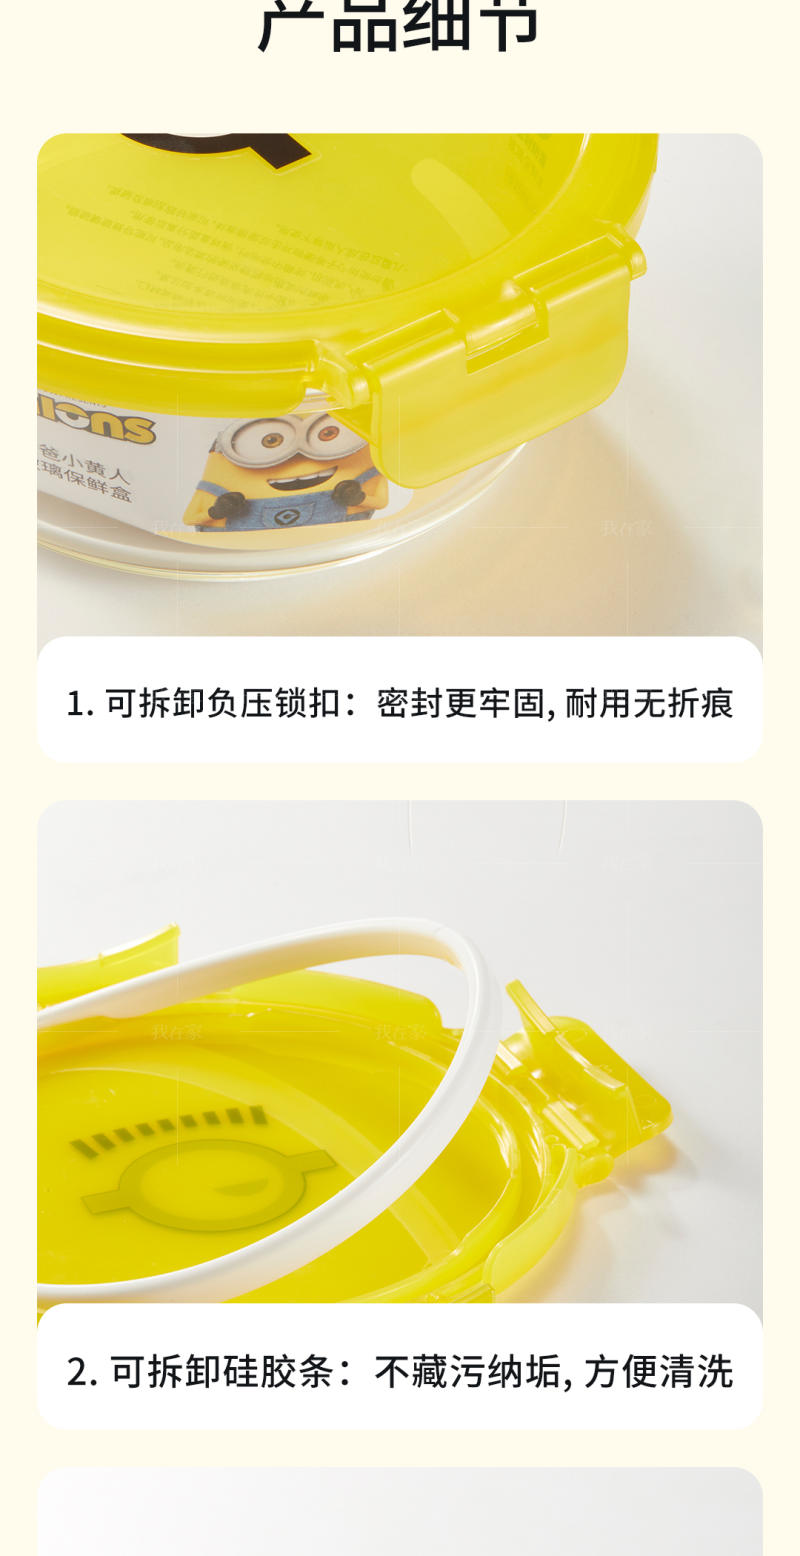 浅草物语系列小黄人保鲜盒两件套的详细介绍